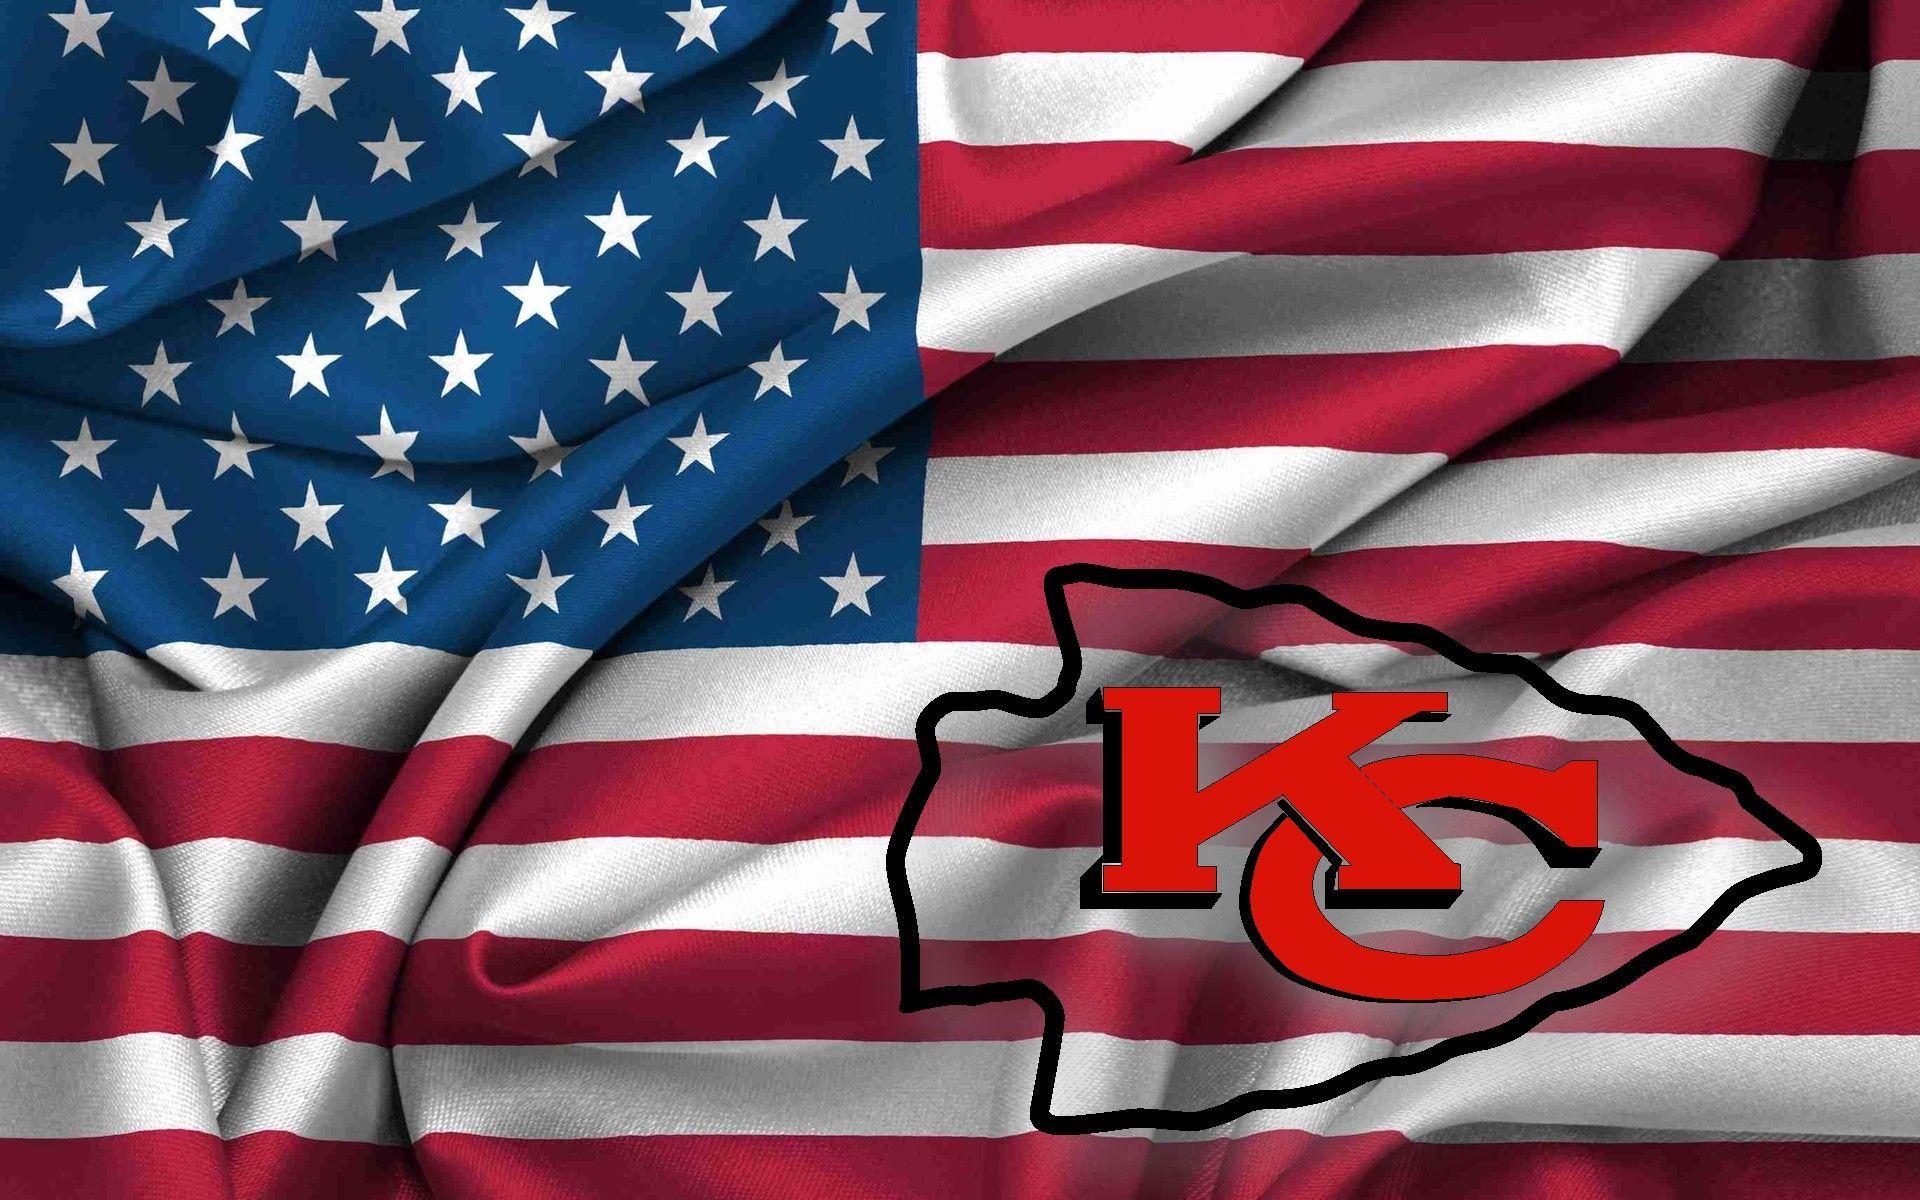 Hình nền 1920x1200 KC Chiefs.  hình ảnh biểu tượng của các thủ lĩnh thành phố kansas trên vải lượn sóng cờ Hoa Kỳ 1920x1200.  Biểu trưng của các thủ lĩnh thành phố Kansas, hình nền của Chiefs, các thủ lĩnh của thành phố Kansas